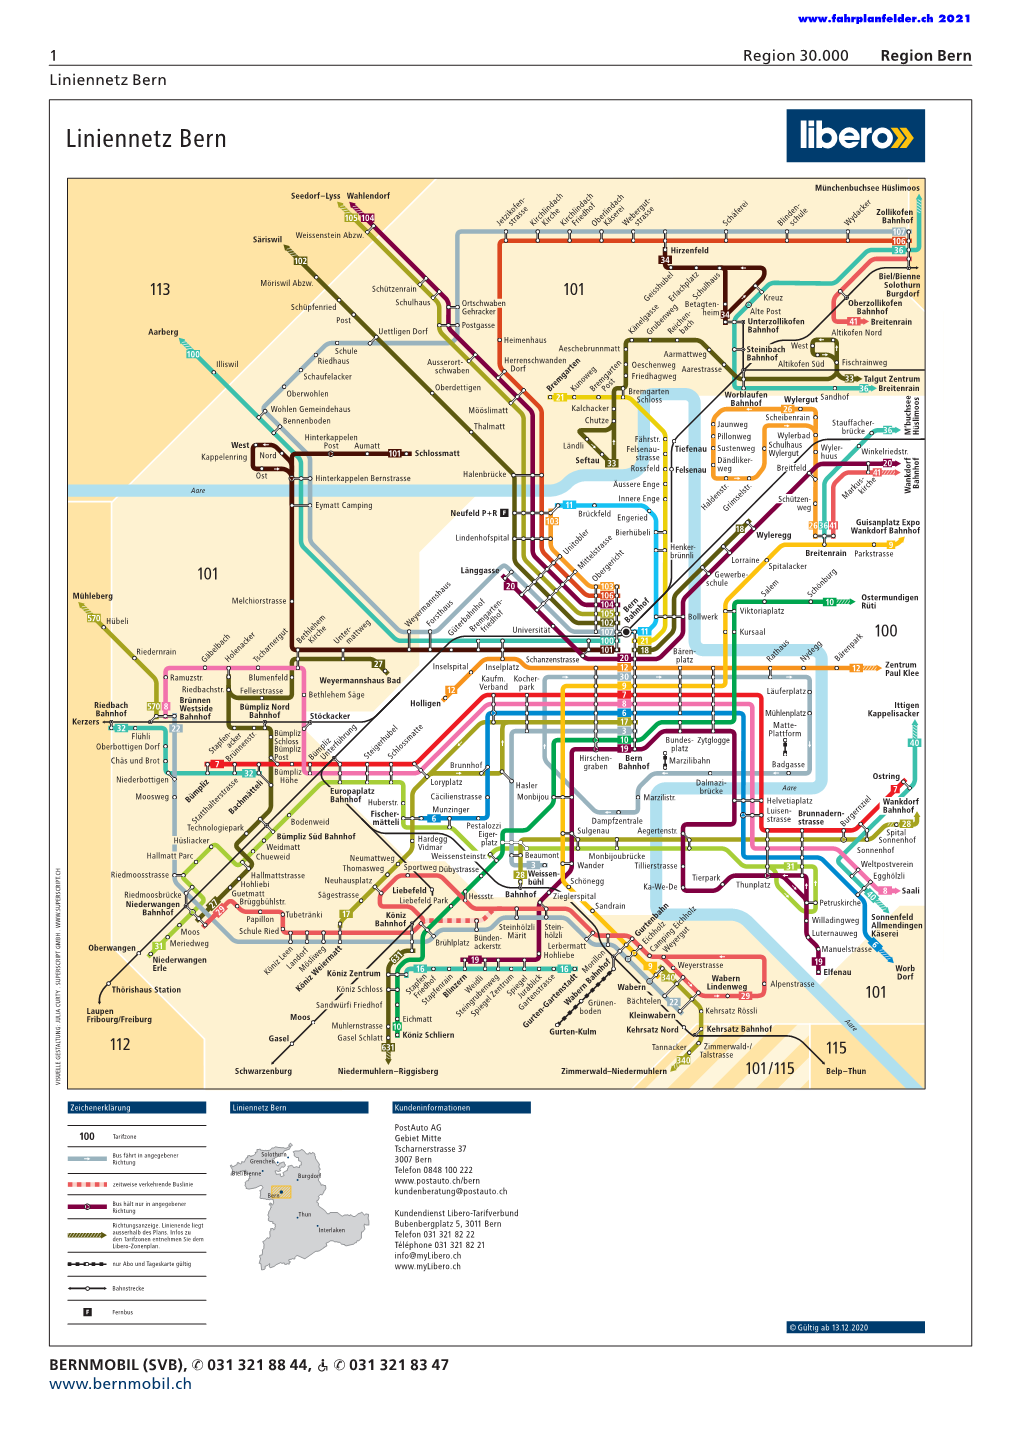 Liniennetz Bern